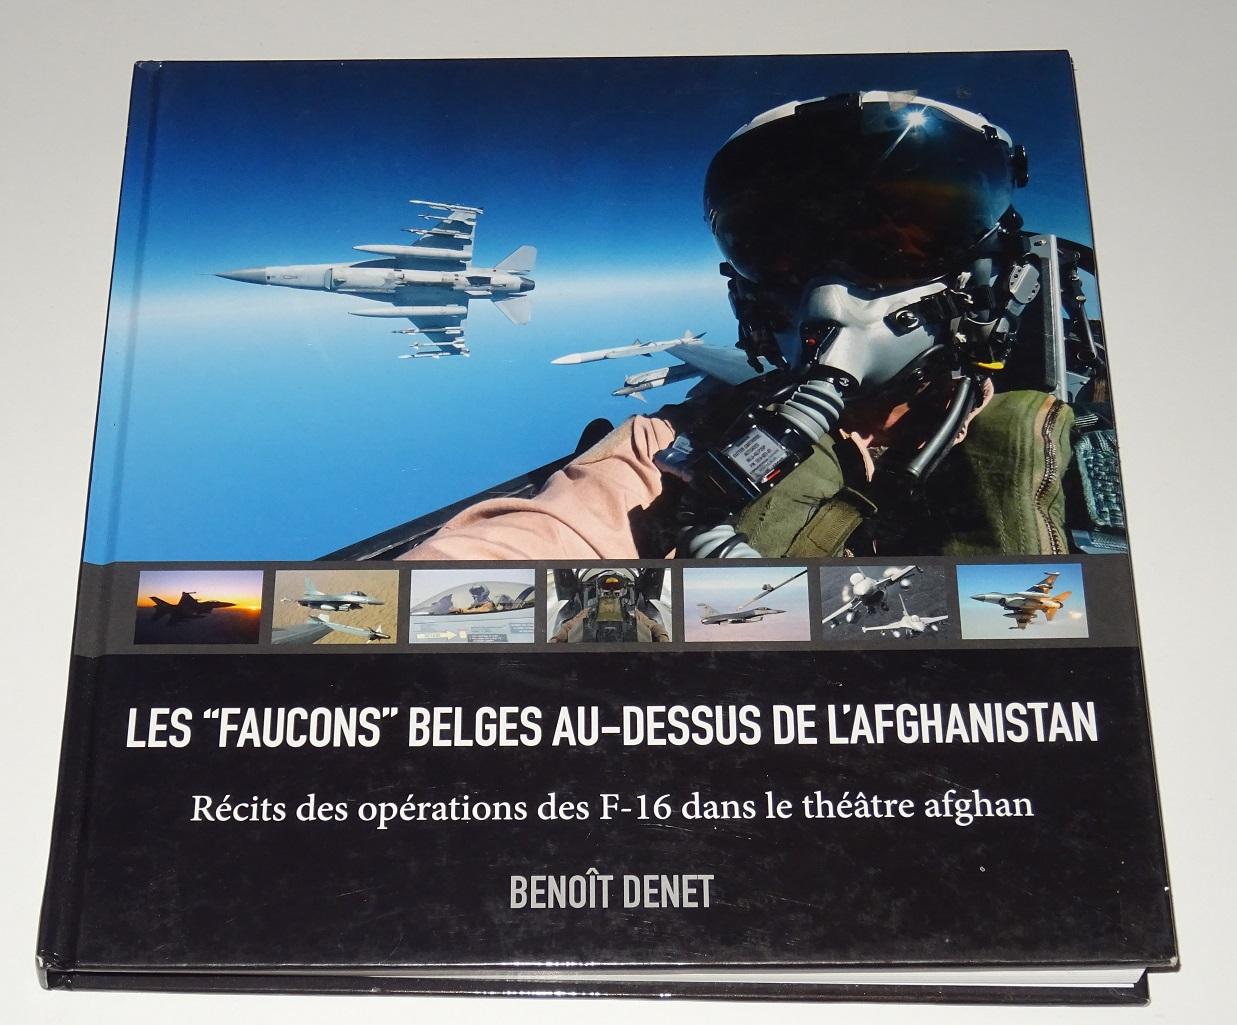 Denet, Benoît - Les "Faucons" Belges au-dessus de l’Afghanistan : Récits des opérations des F-16 dans le théatre afghan